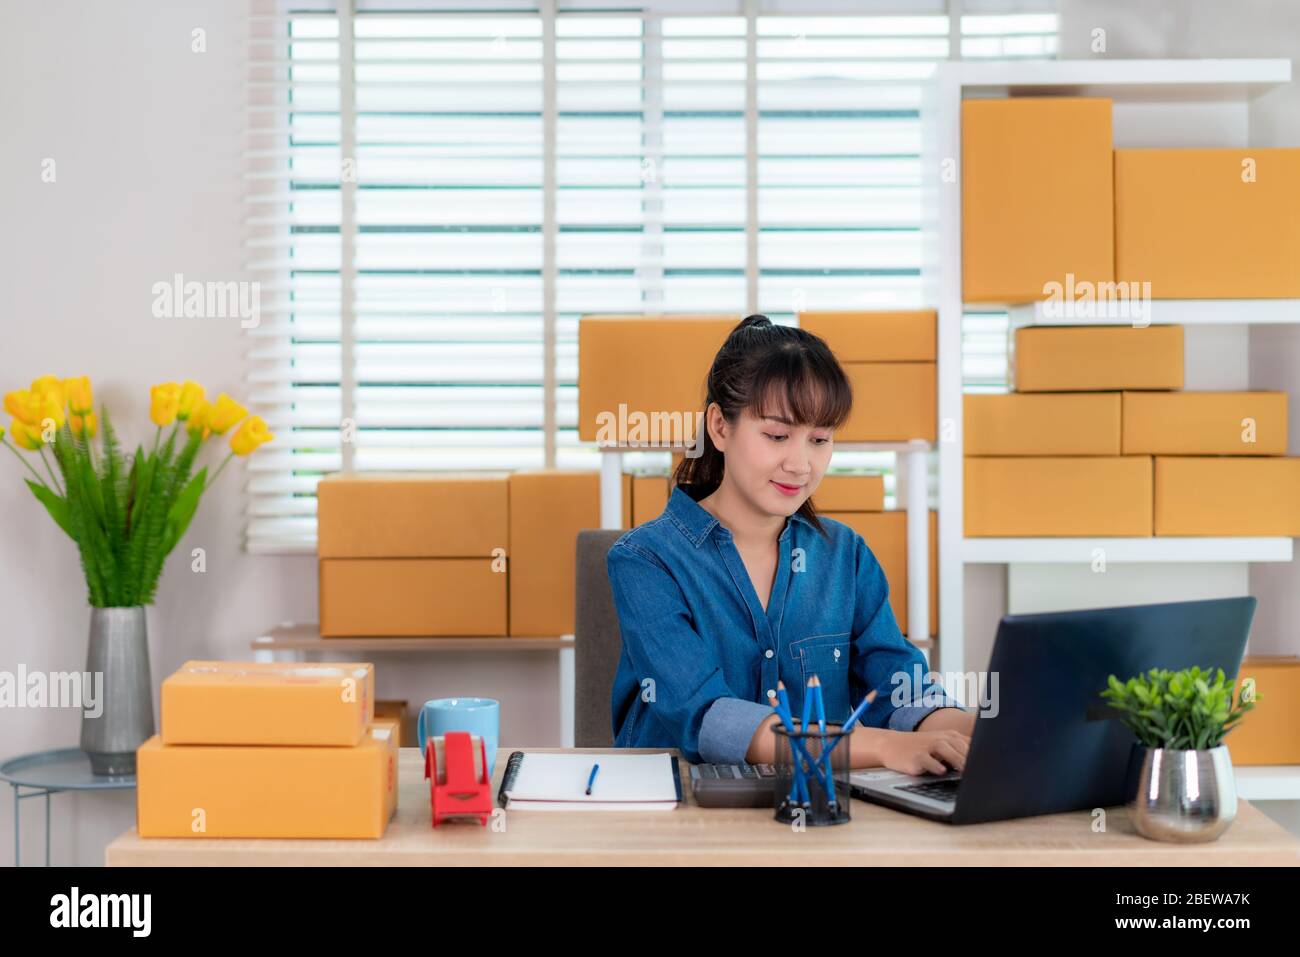 Propriétaire asiatique femme d'affaires travailler à la maison pour les achats en ligne, discuter avec le client son ordinateur portable avec l'équipement de bureau, style de vie d'entrepreneur Banque D'Images